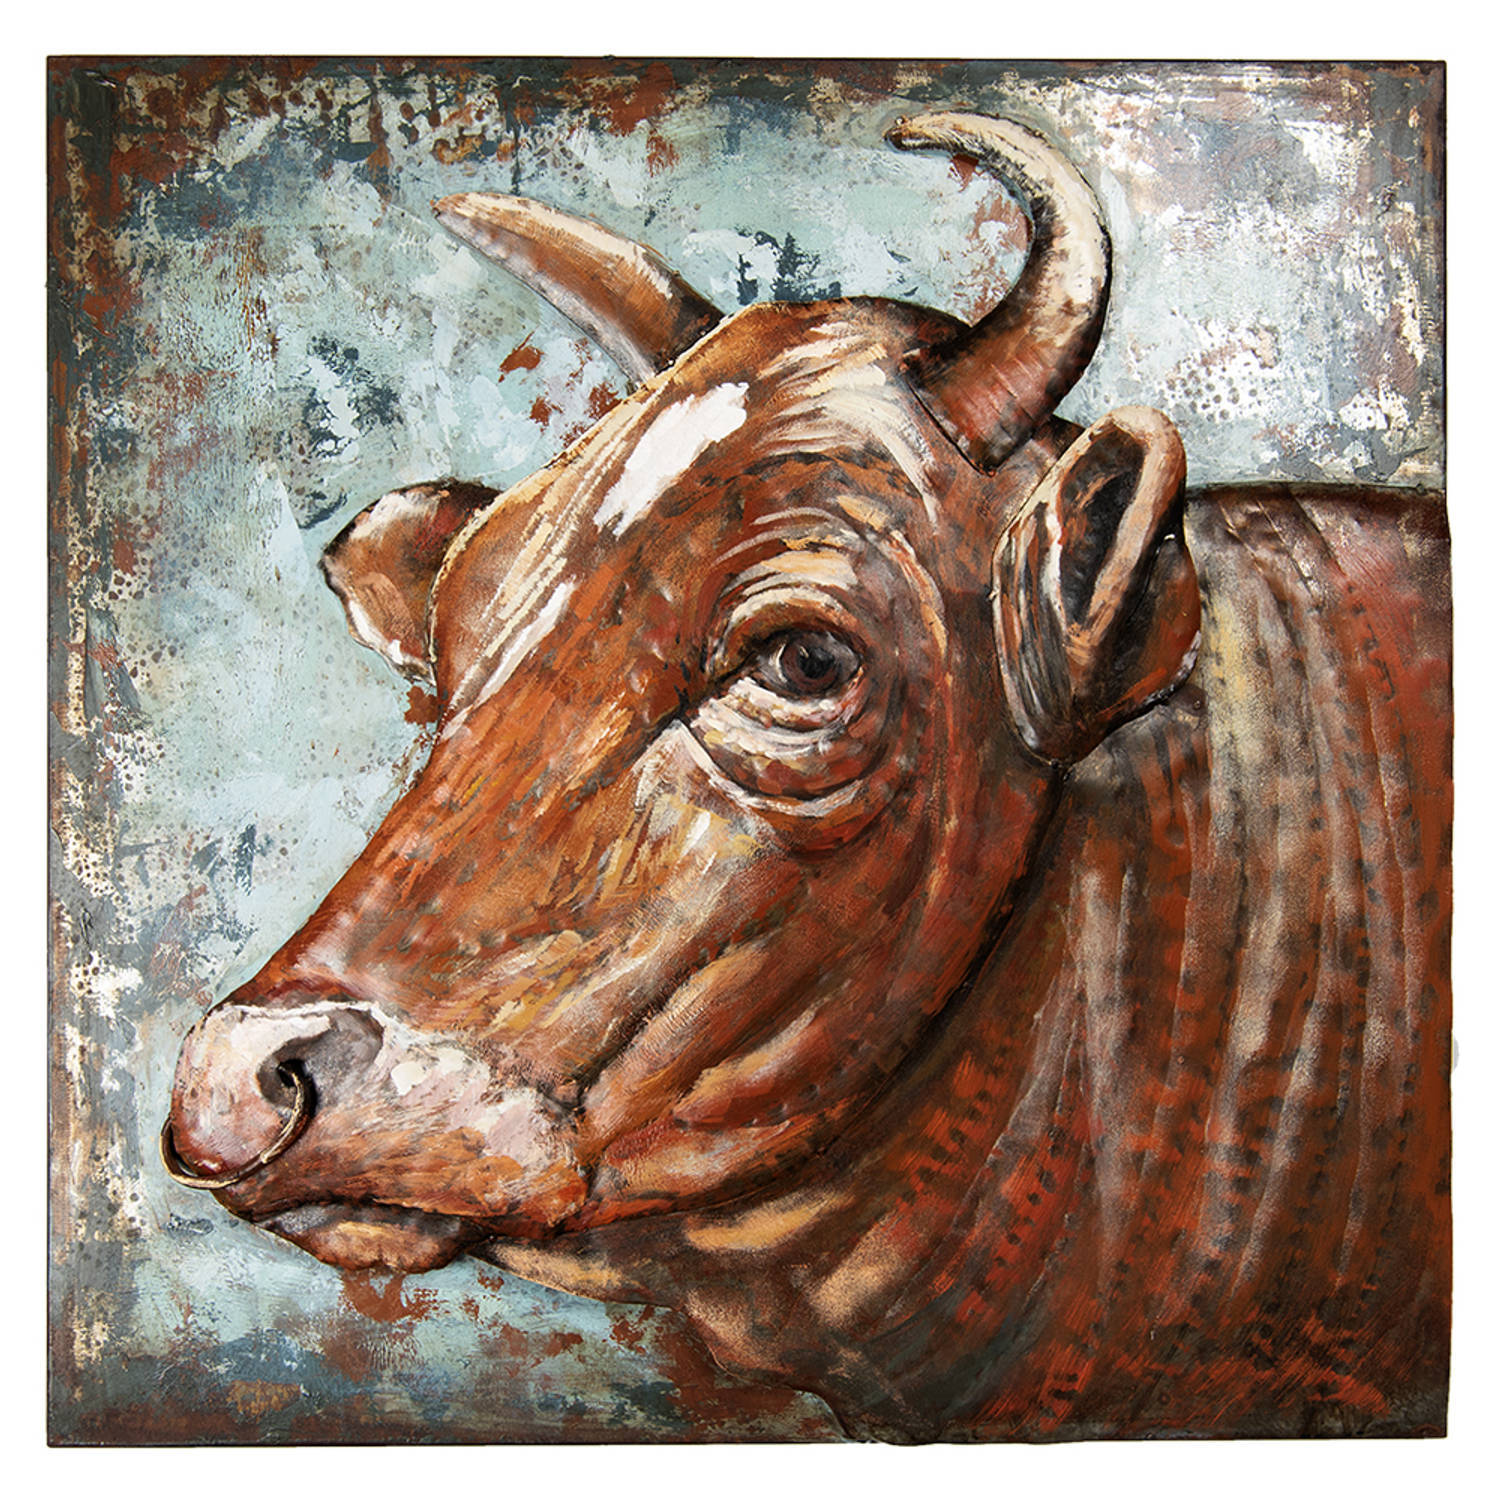 Clayre & Eef metalen schilderij 80x80 cm bruin ijzer koe wanddecoratie muurdecoratie schilderij bruin wanddecoratie